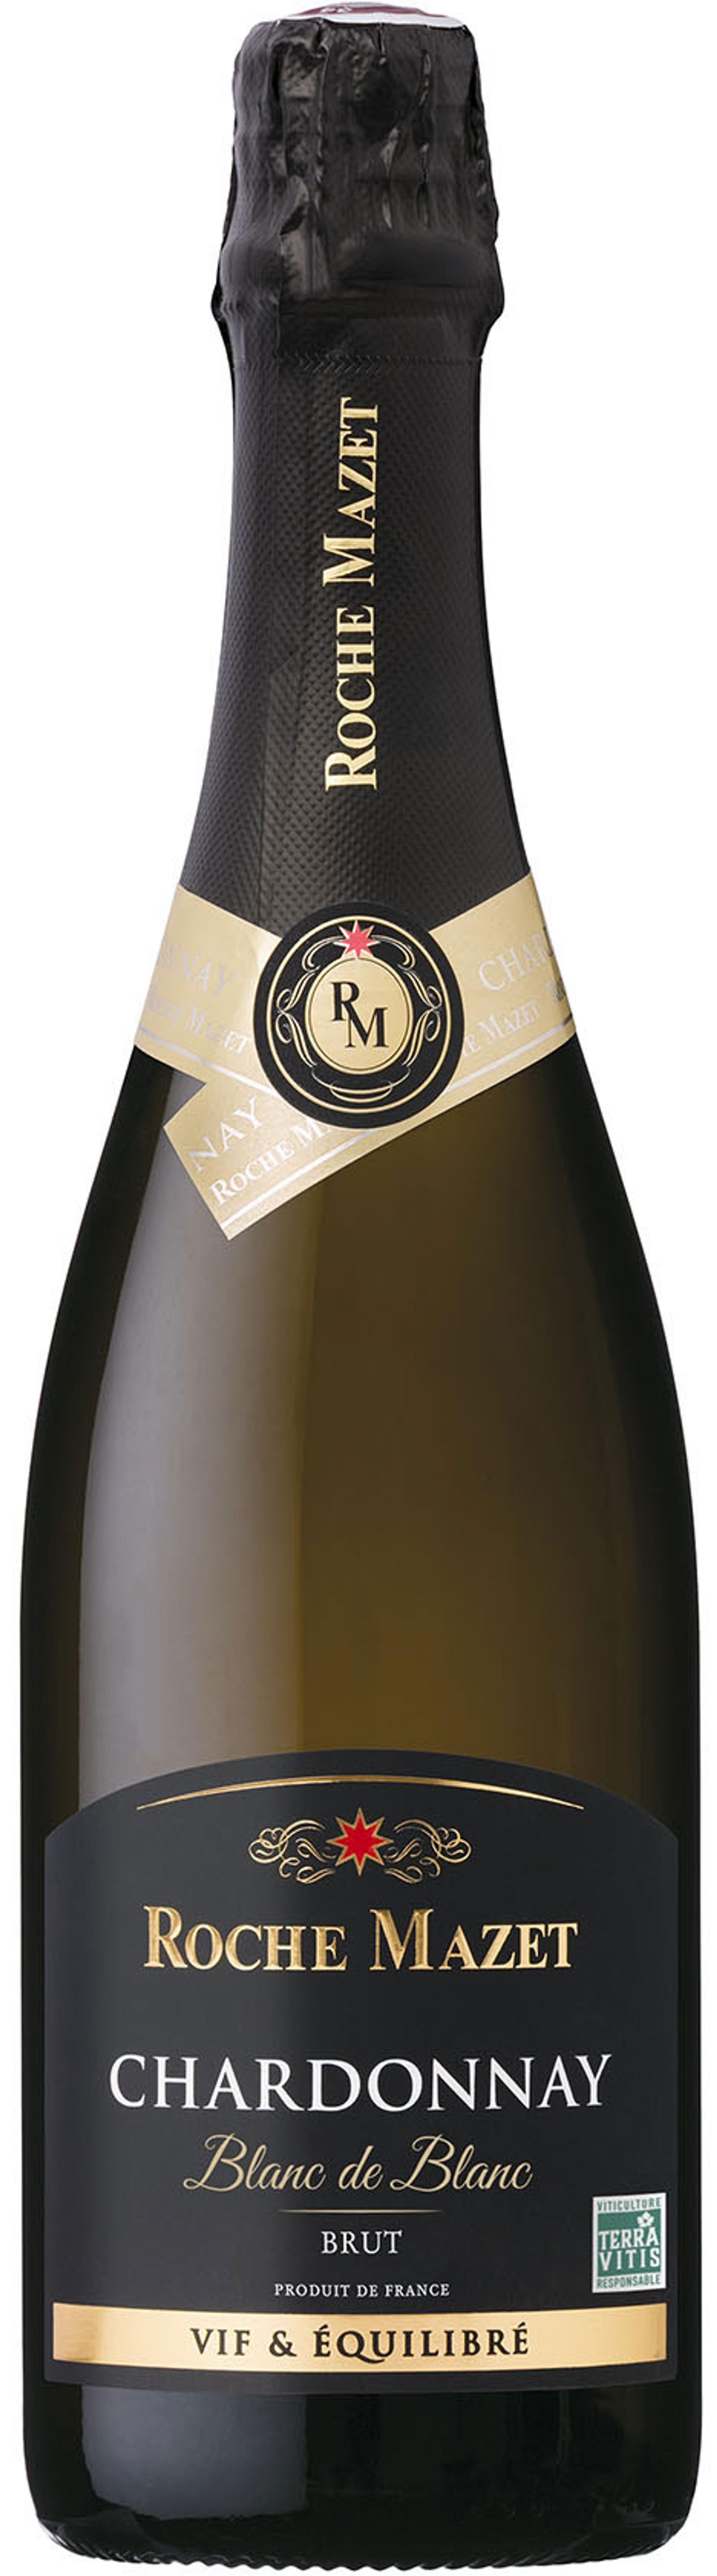 Roche Mazet Chardonnay Brut